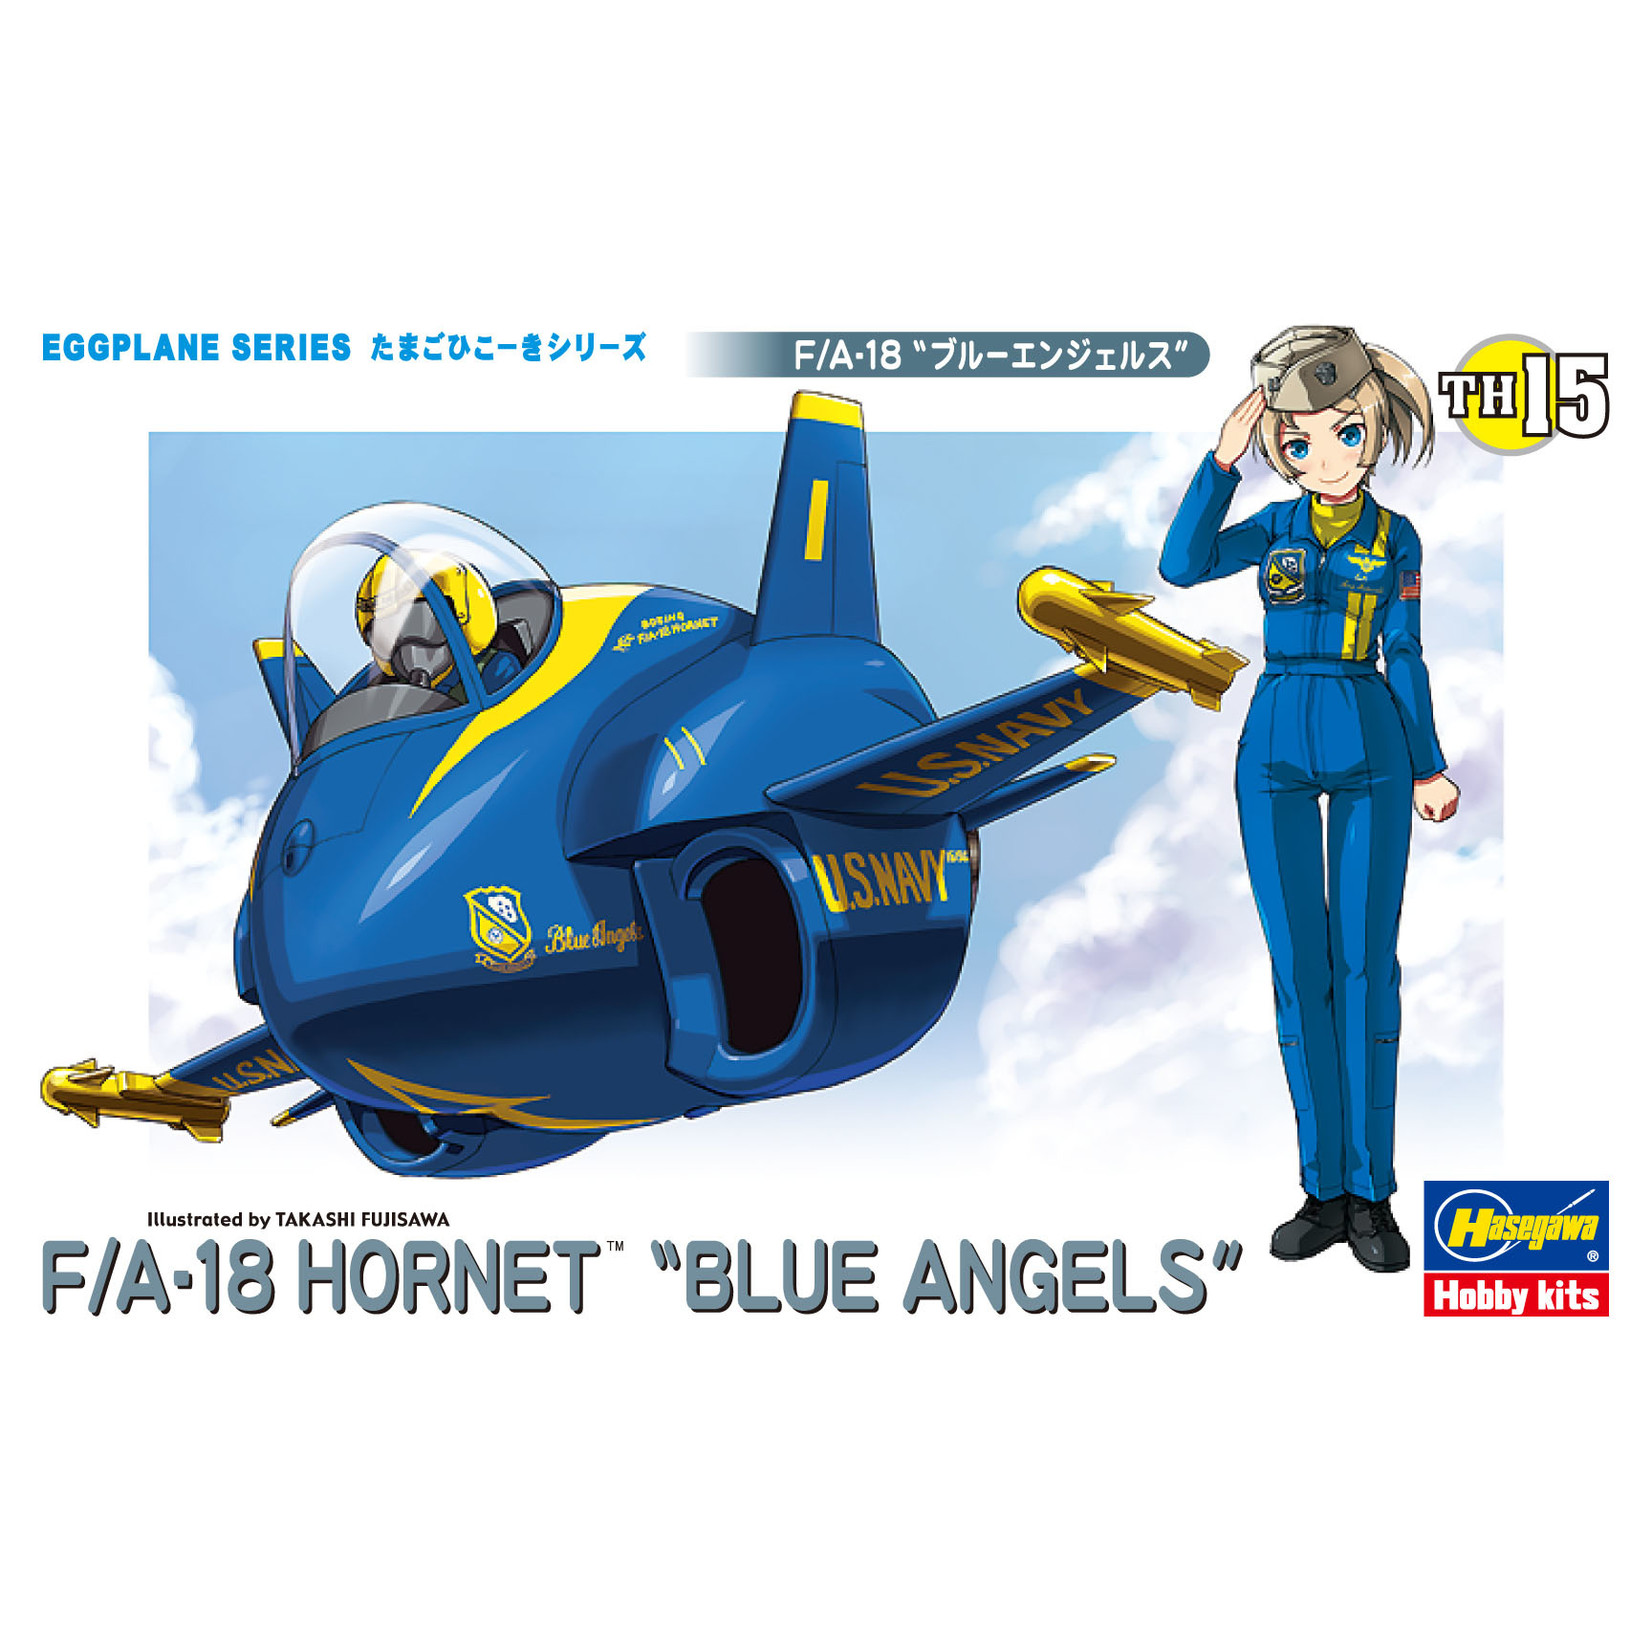 Hasegawa HSGWA60125 Egg Plane F/A-18 Blue Angels